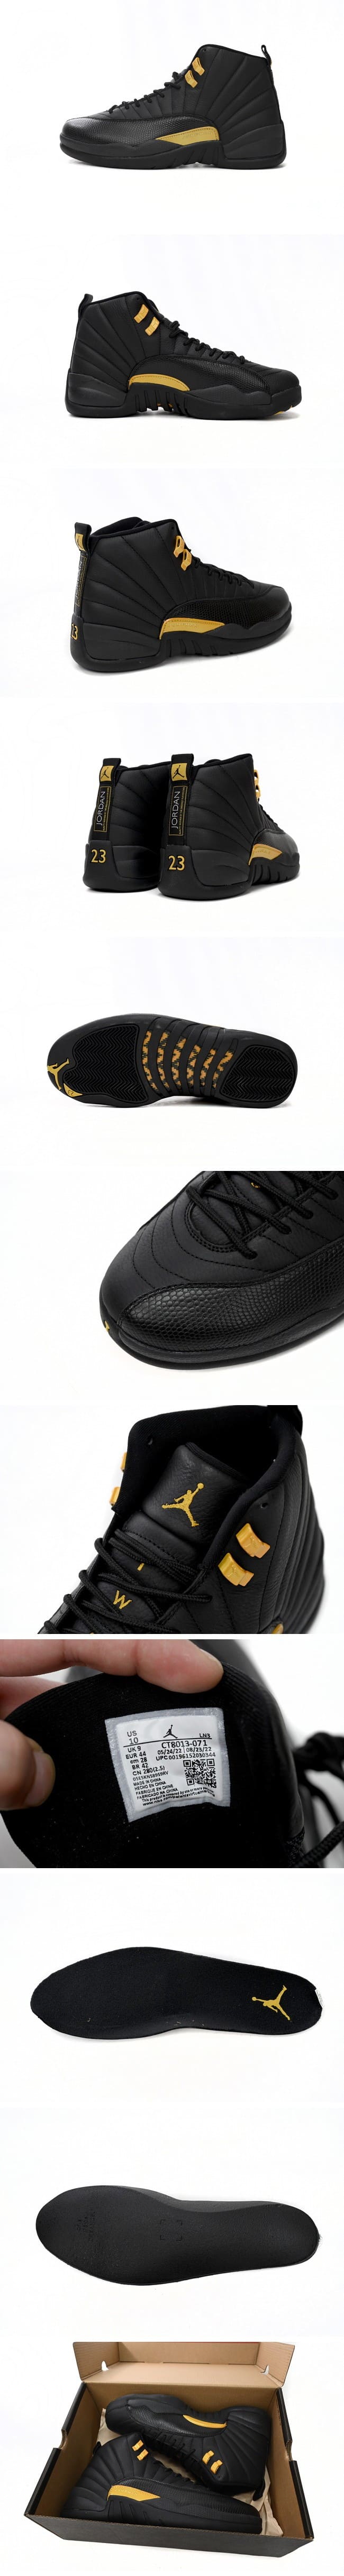 Nike Air Jordan 12 Retro Black Taxi CT8013-071 ナイキ エアジョーダン12 レトロ ブラックタクシー